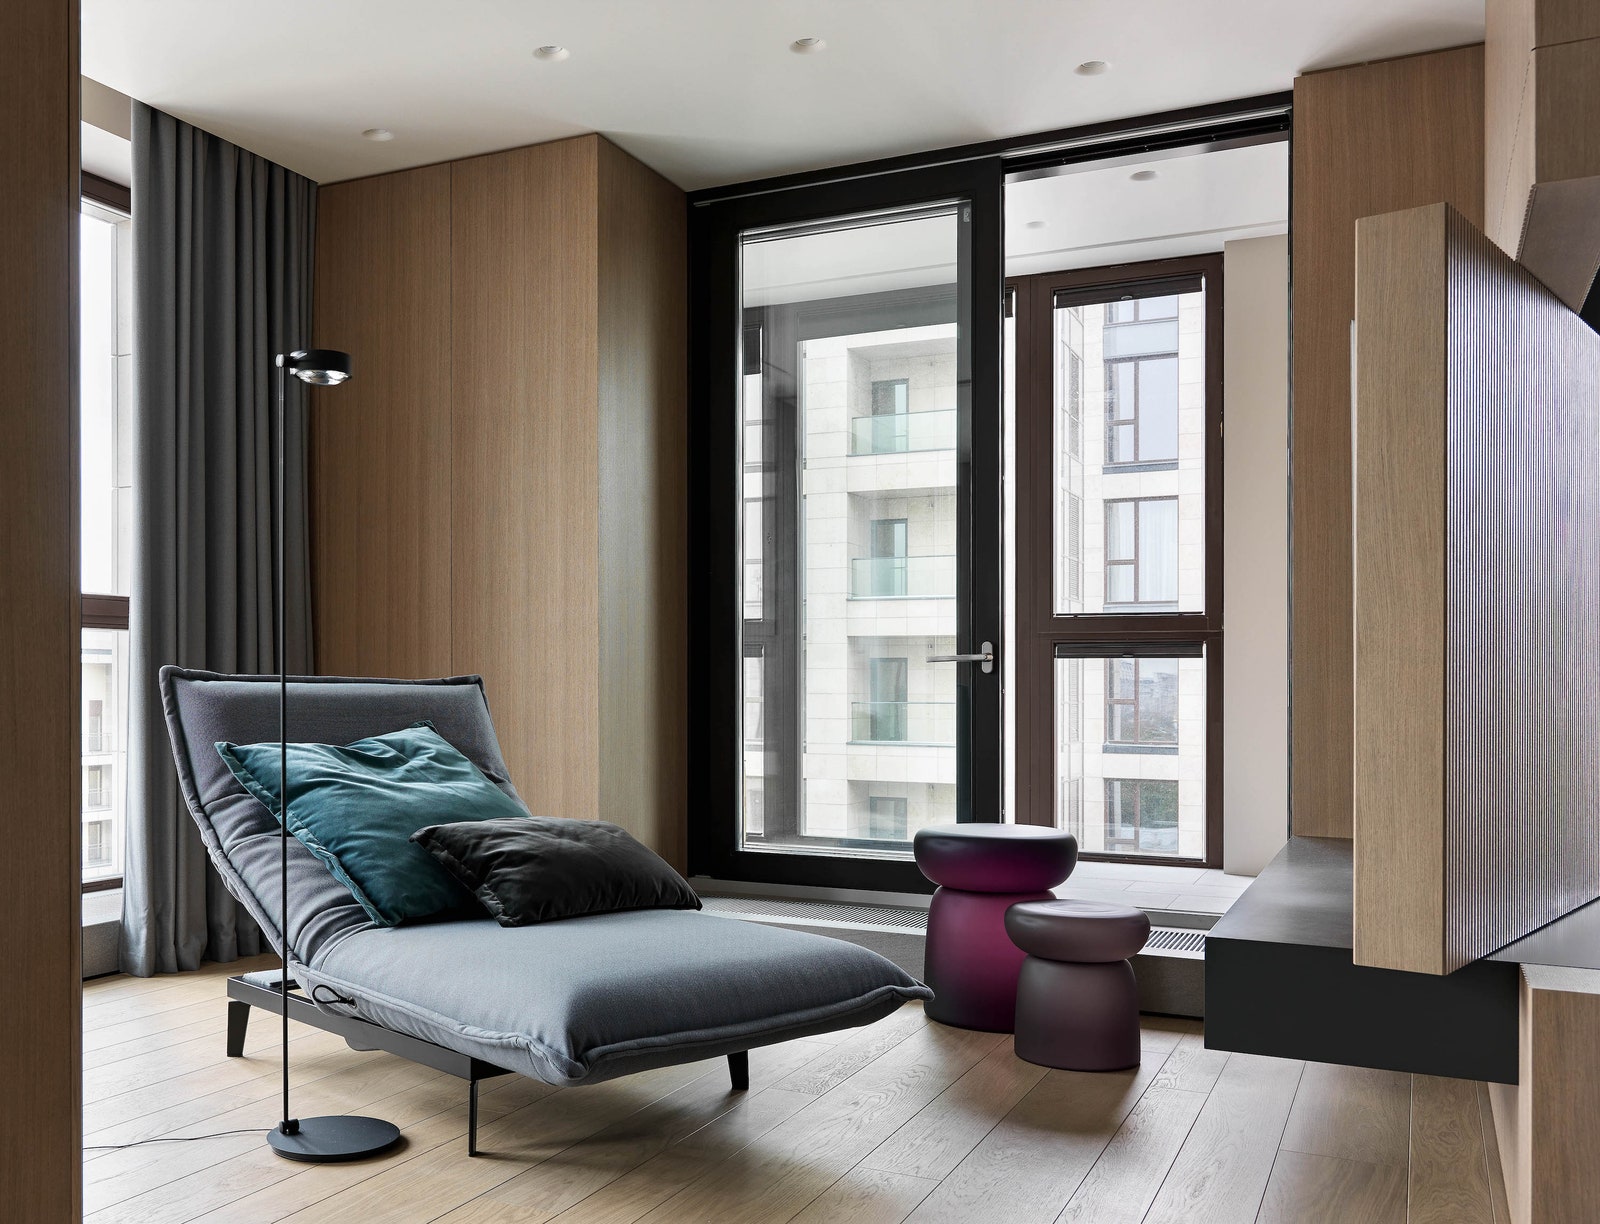 Квартира спроектированная и оформленная командой NIDO interiors.